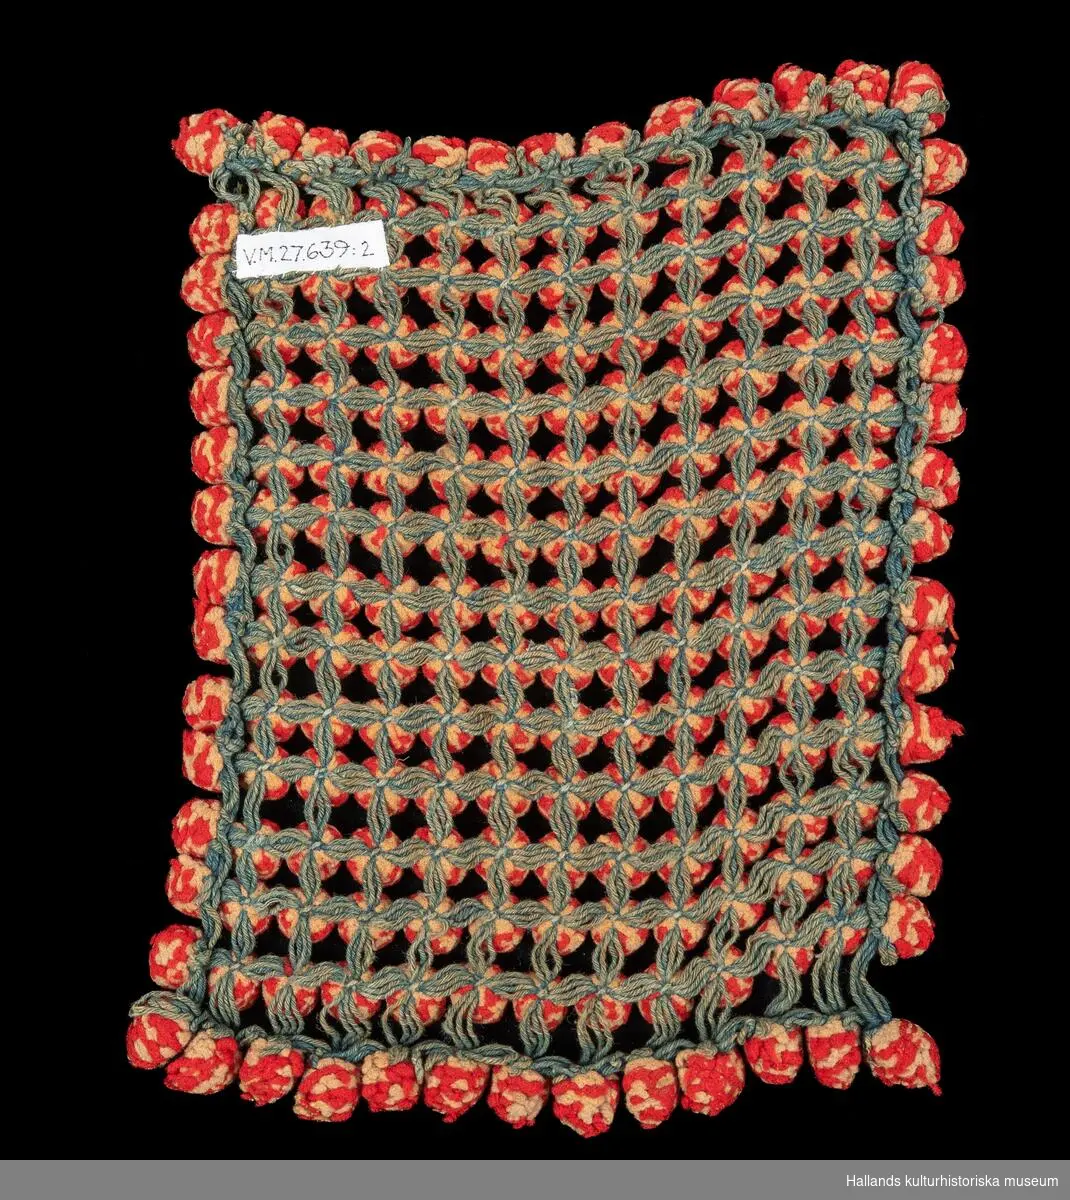 Underlägg för varma karotter bestående av sammanfogade runda garntofsar i rött, grönt och vitt ylle.